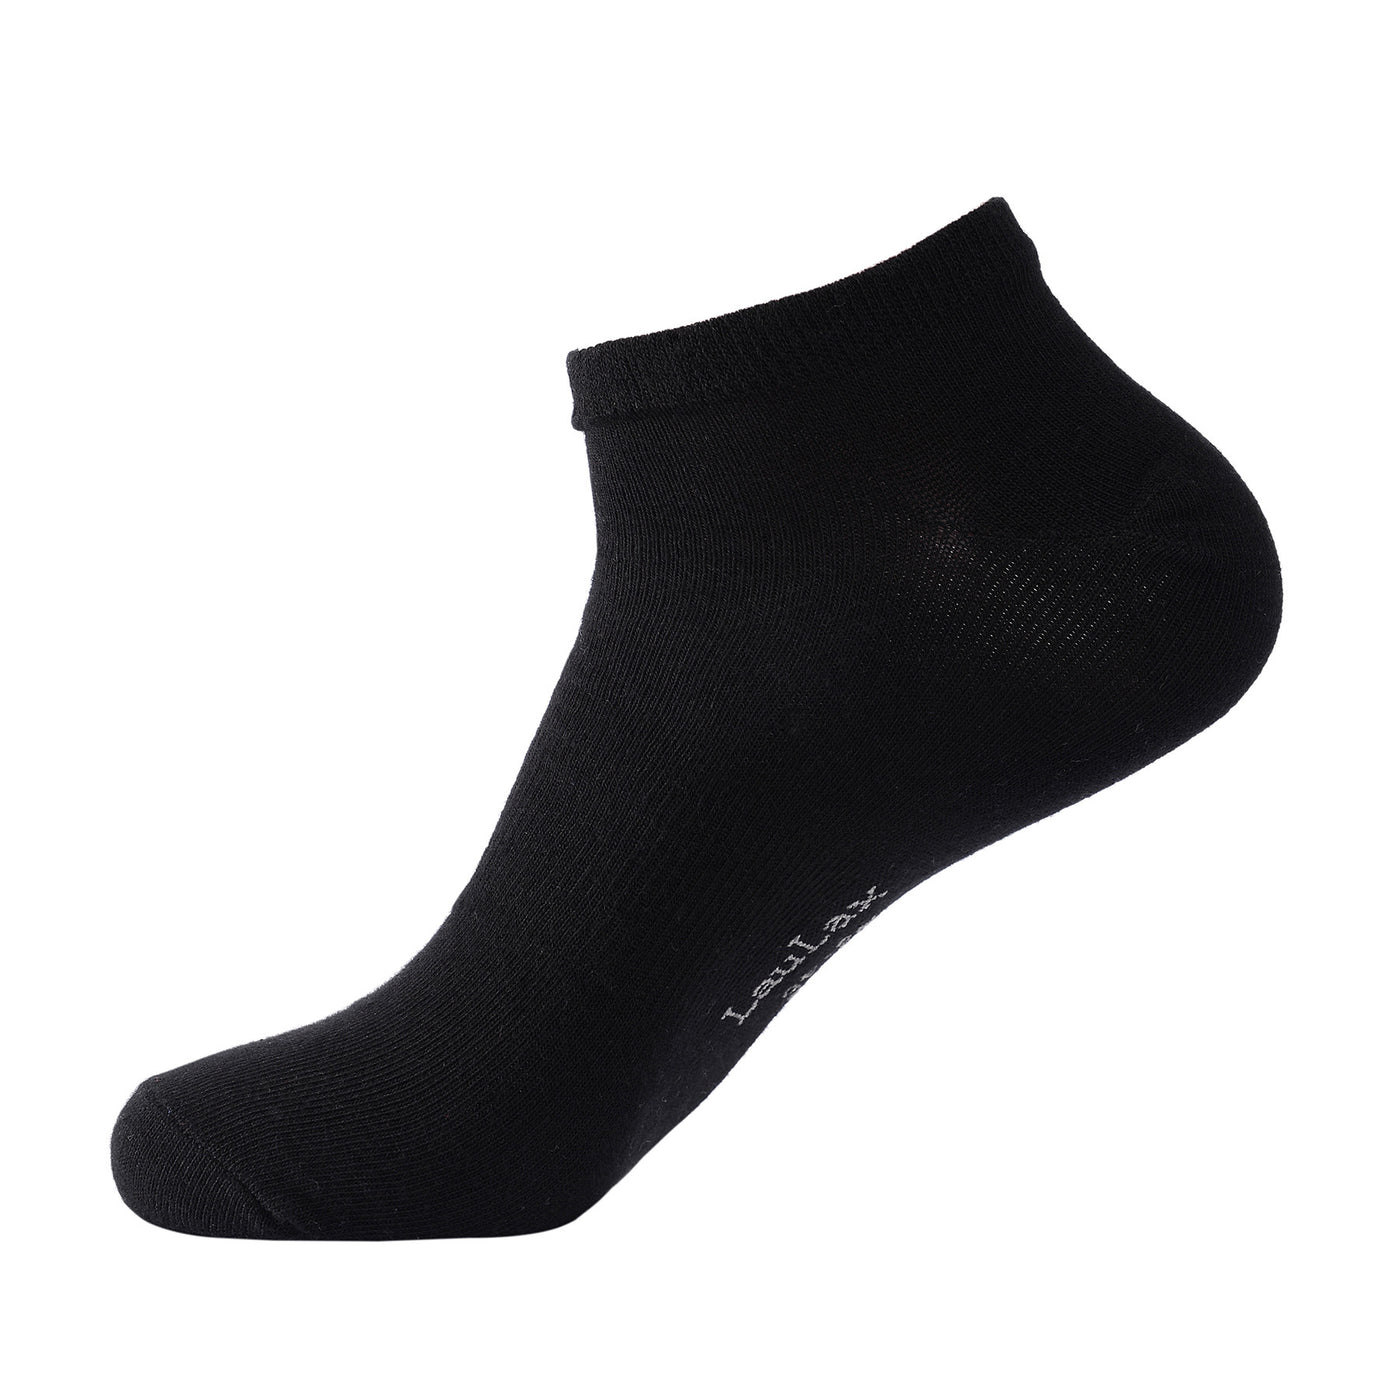 Laulax 6 paires de chaussettes d'entraînement pour soutien de la voûte plantaire en coton peigné fin, noir, taille UK 9-11/Europ 43-46